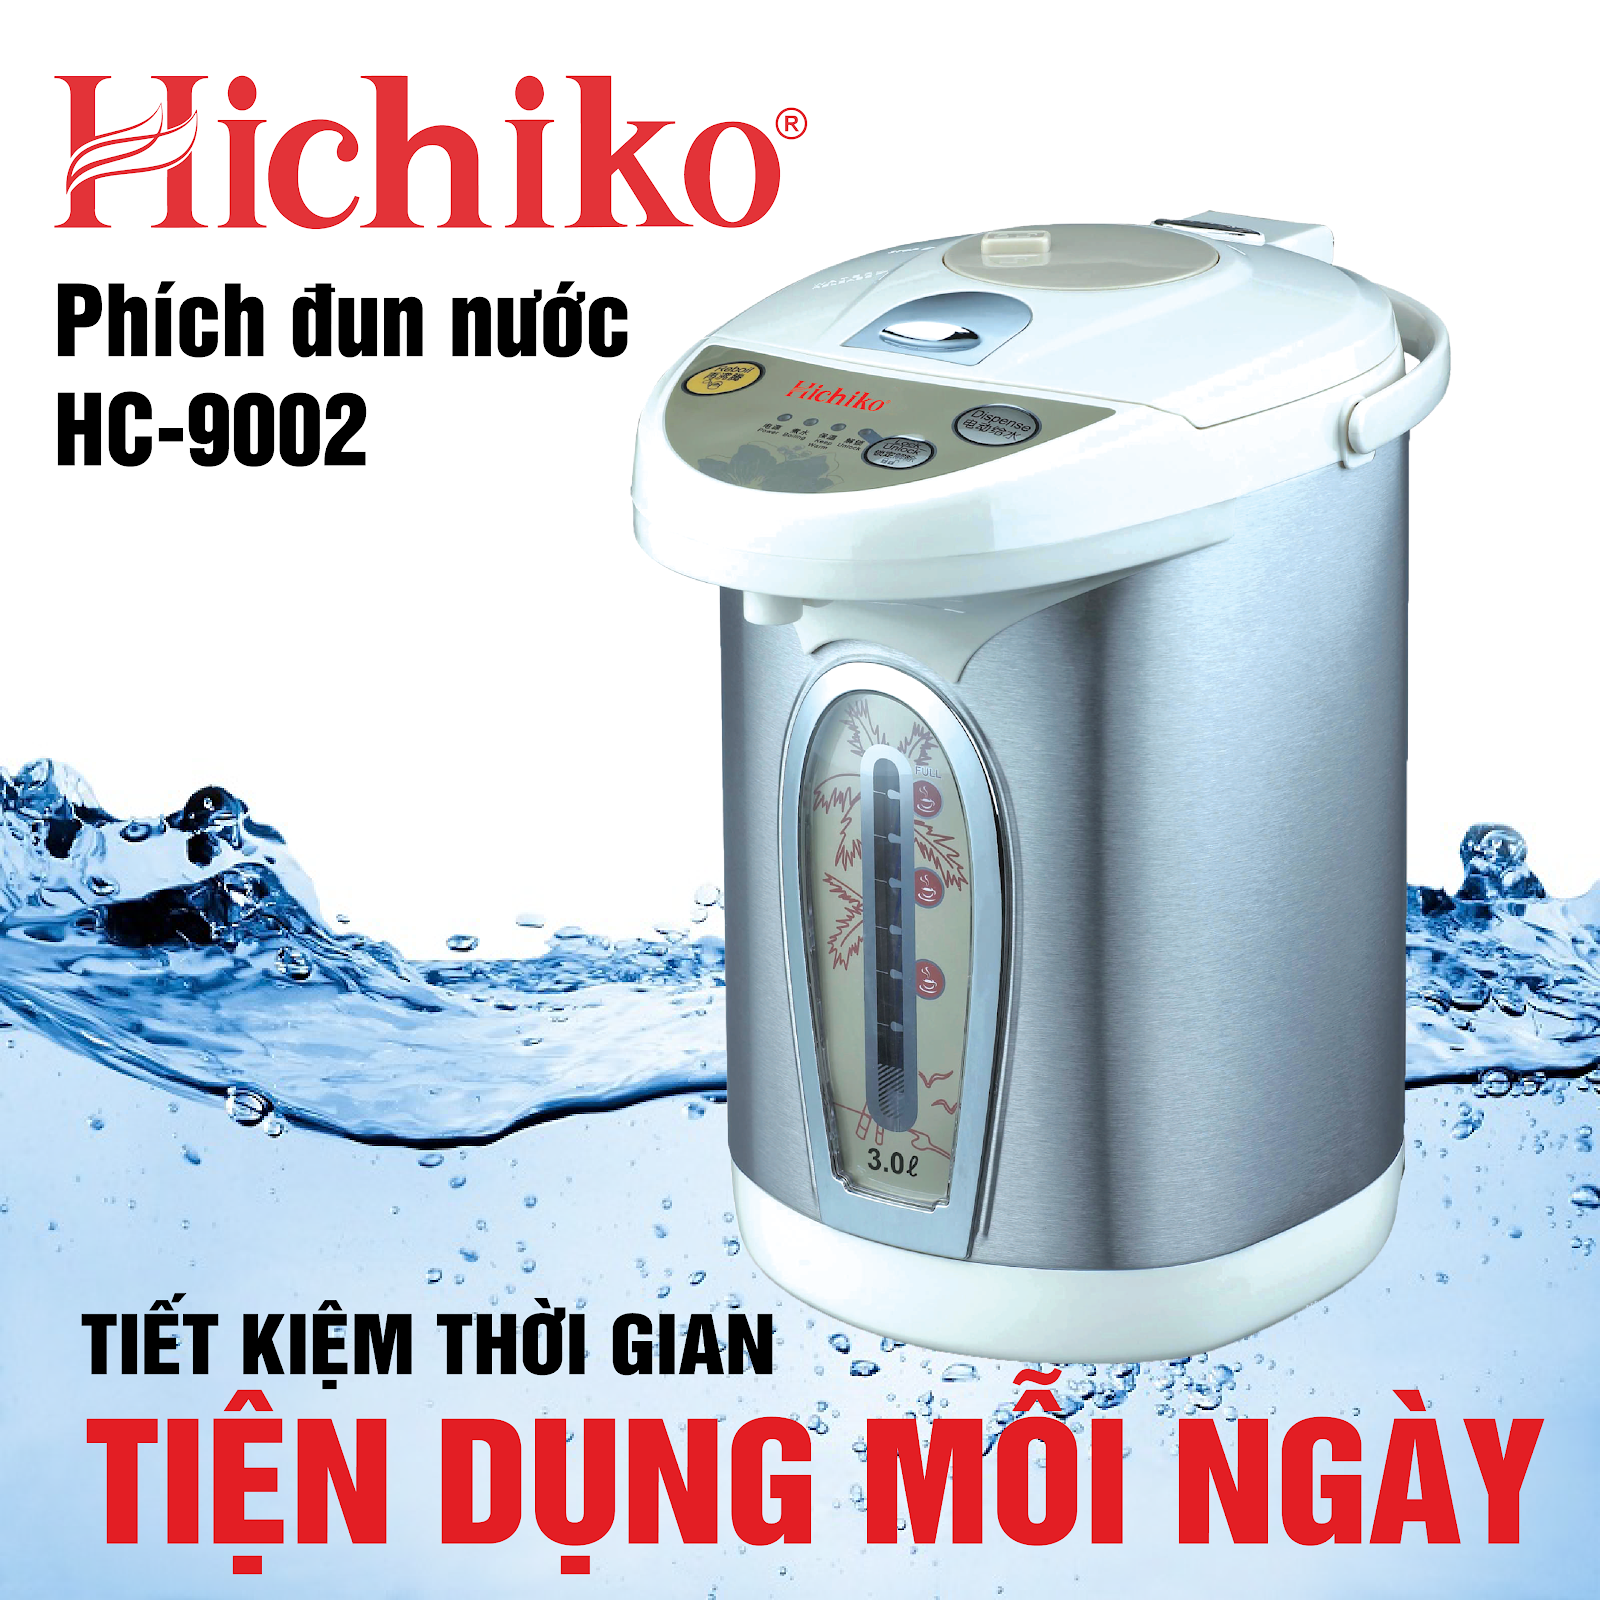 Phích đun nước Hichiko HC-9002 (Ảnh 1)